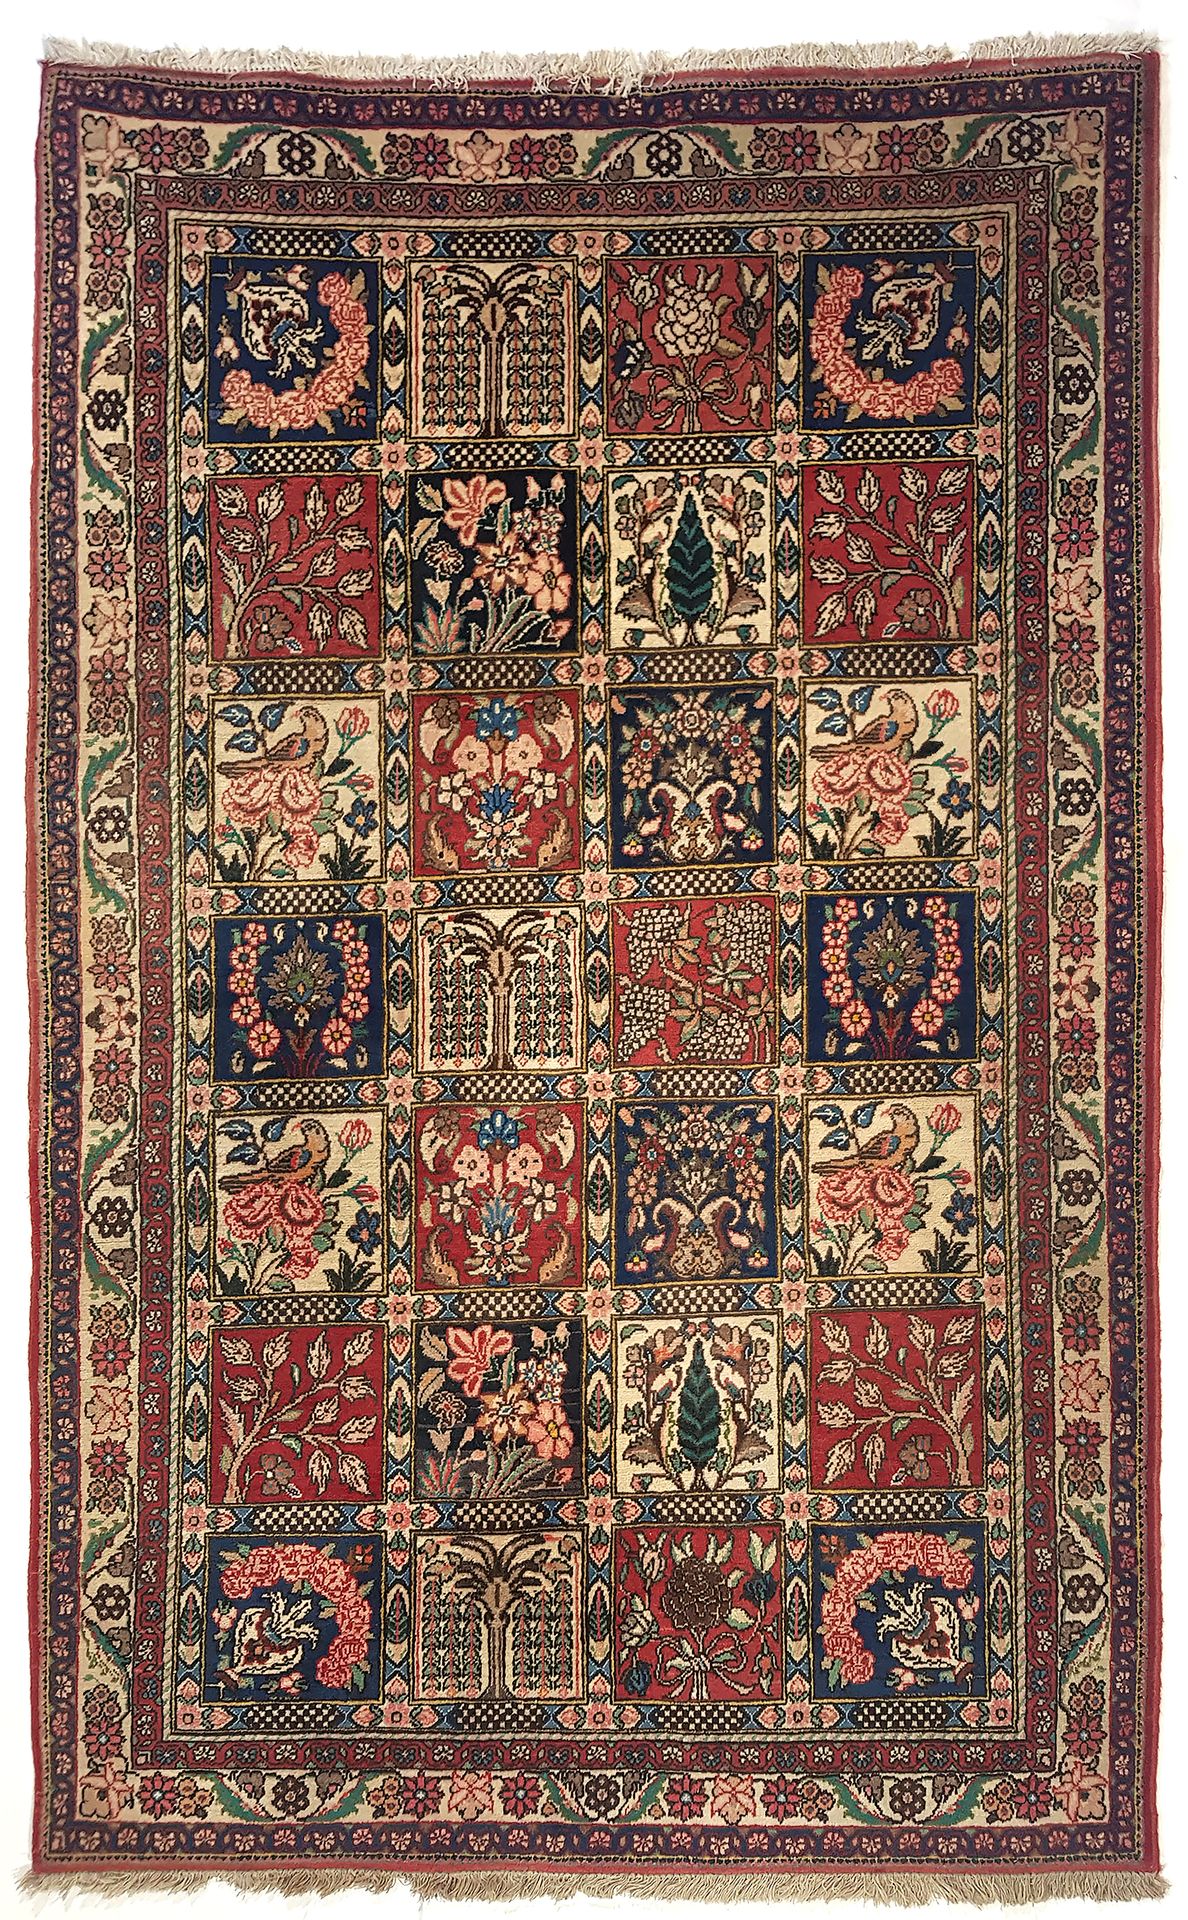 Null 大型BAKTIAR DJAHAD地毯（伊朗），约1985年

尺寸：210 x 130厘米

技术特点 : 棉质底面的丝质羊毛绒布

总体状况良好

&hellip;